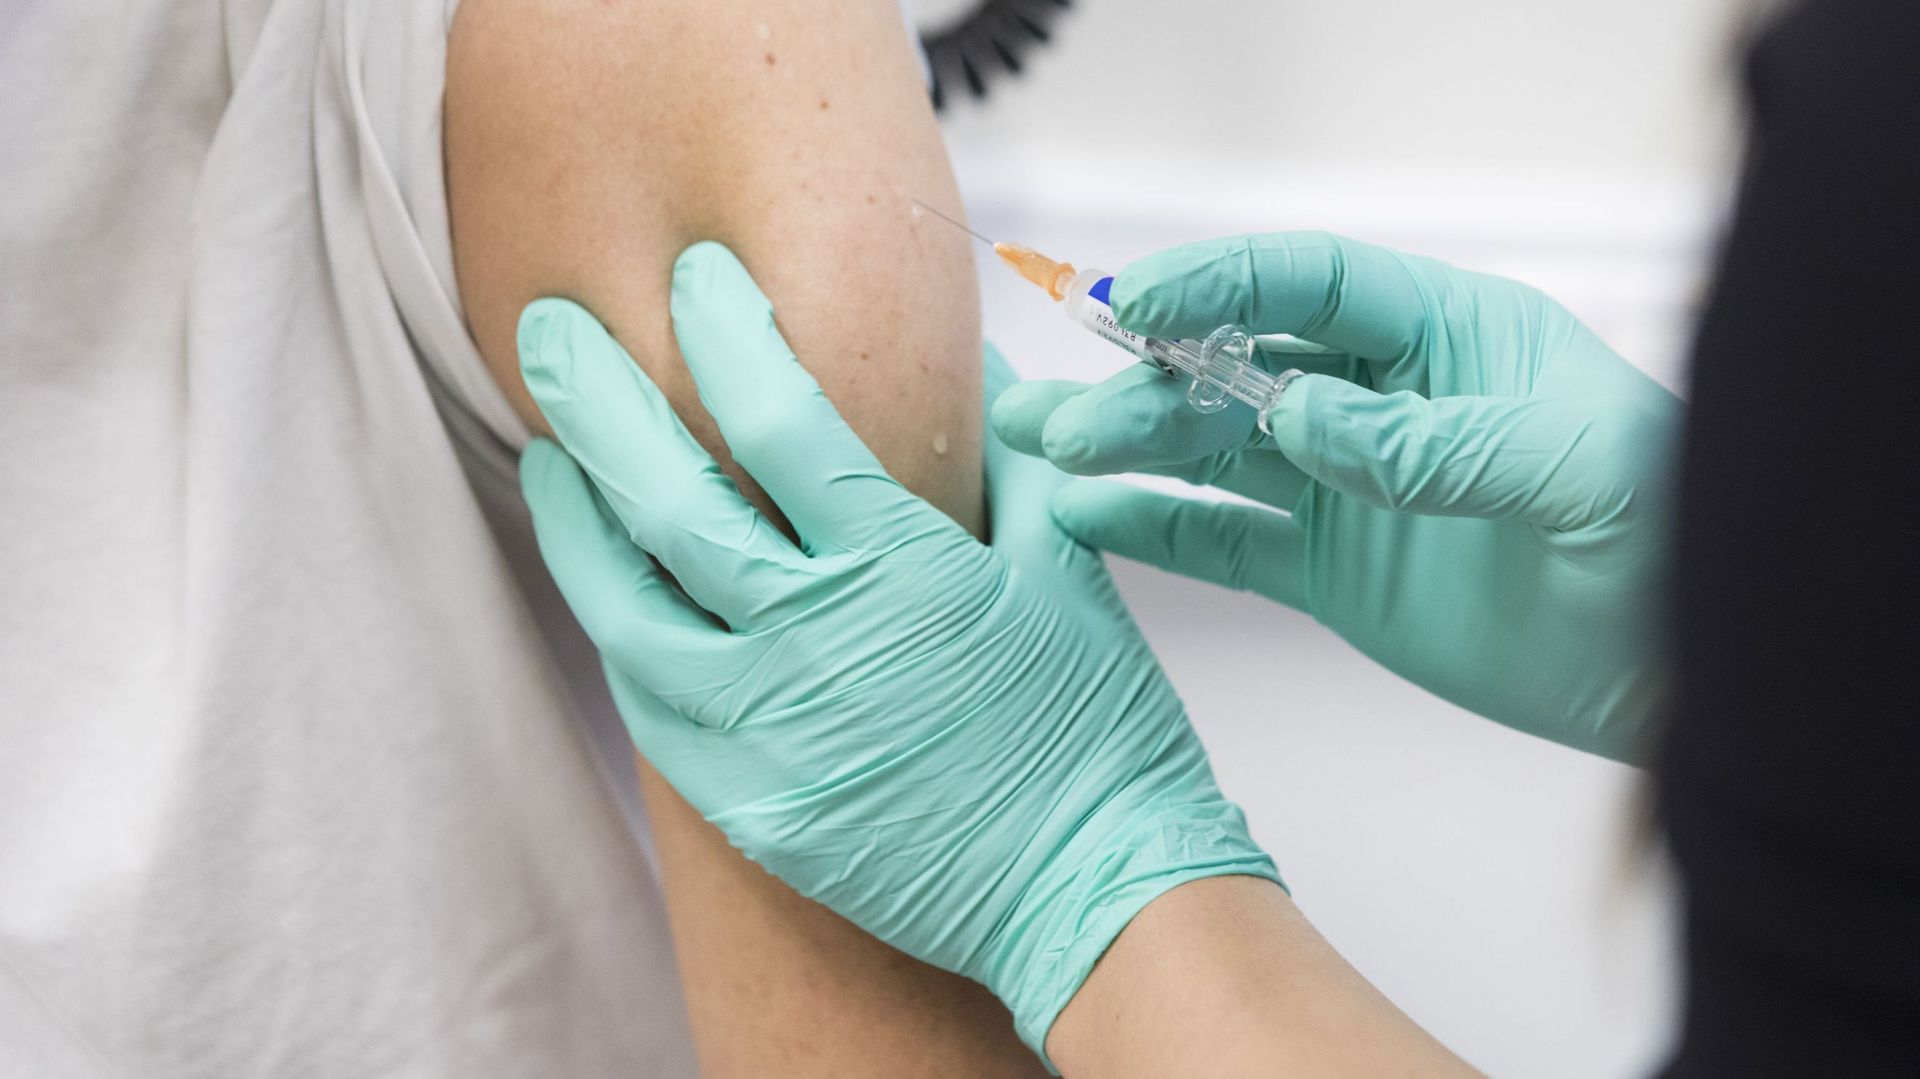  "Non seulement, l’immunité paraît supérieure, mais cette formule-là doit déboucher sur des effets à longue durée", affirme l'infectiologue Patrick Soentjens à propos du vaccin du groupe Johnson&Johnson.